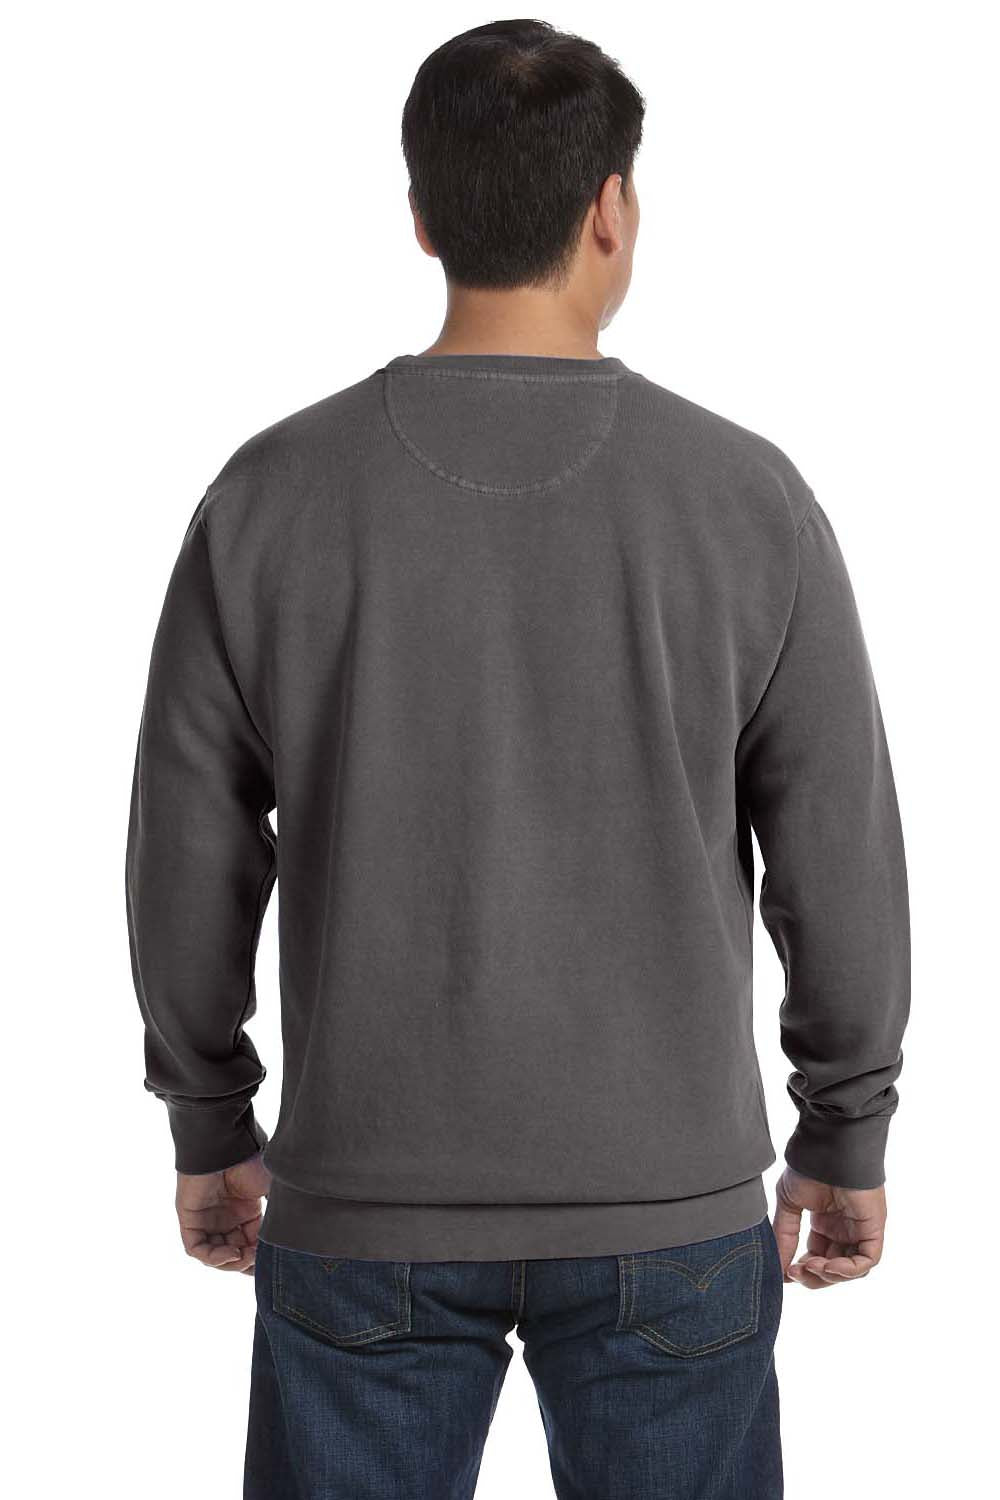 Comfort Colors 1566 Mens Crewneck Sweatshirt Pepper Grey Back